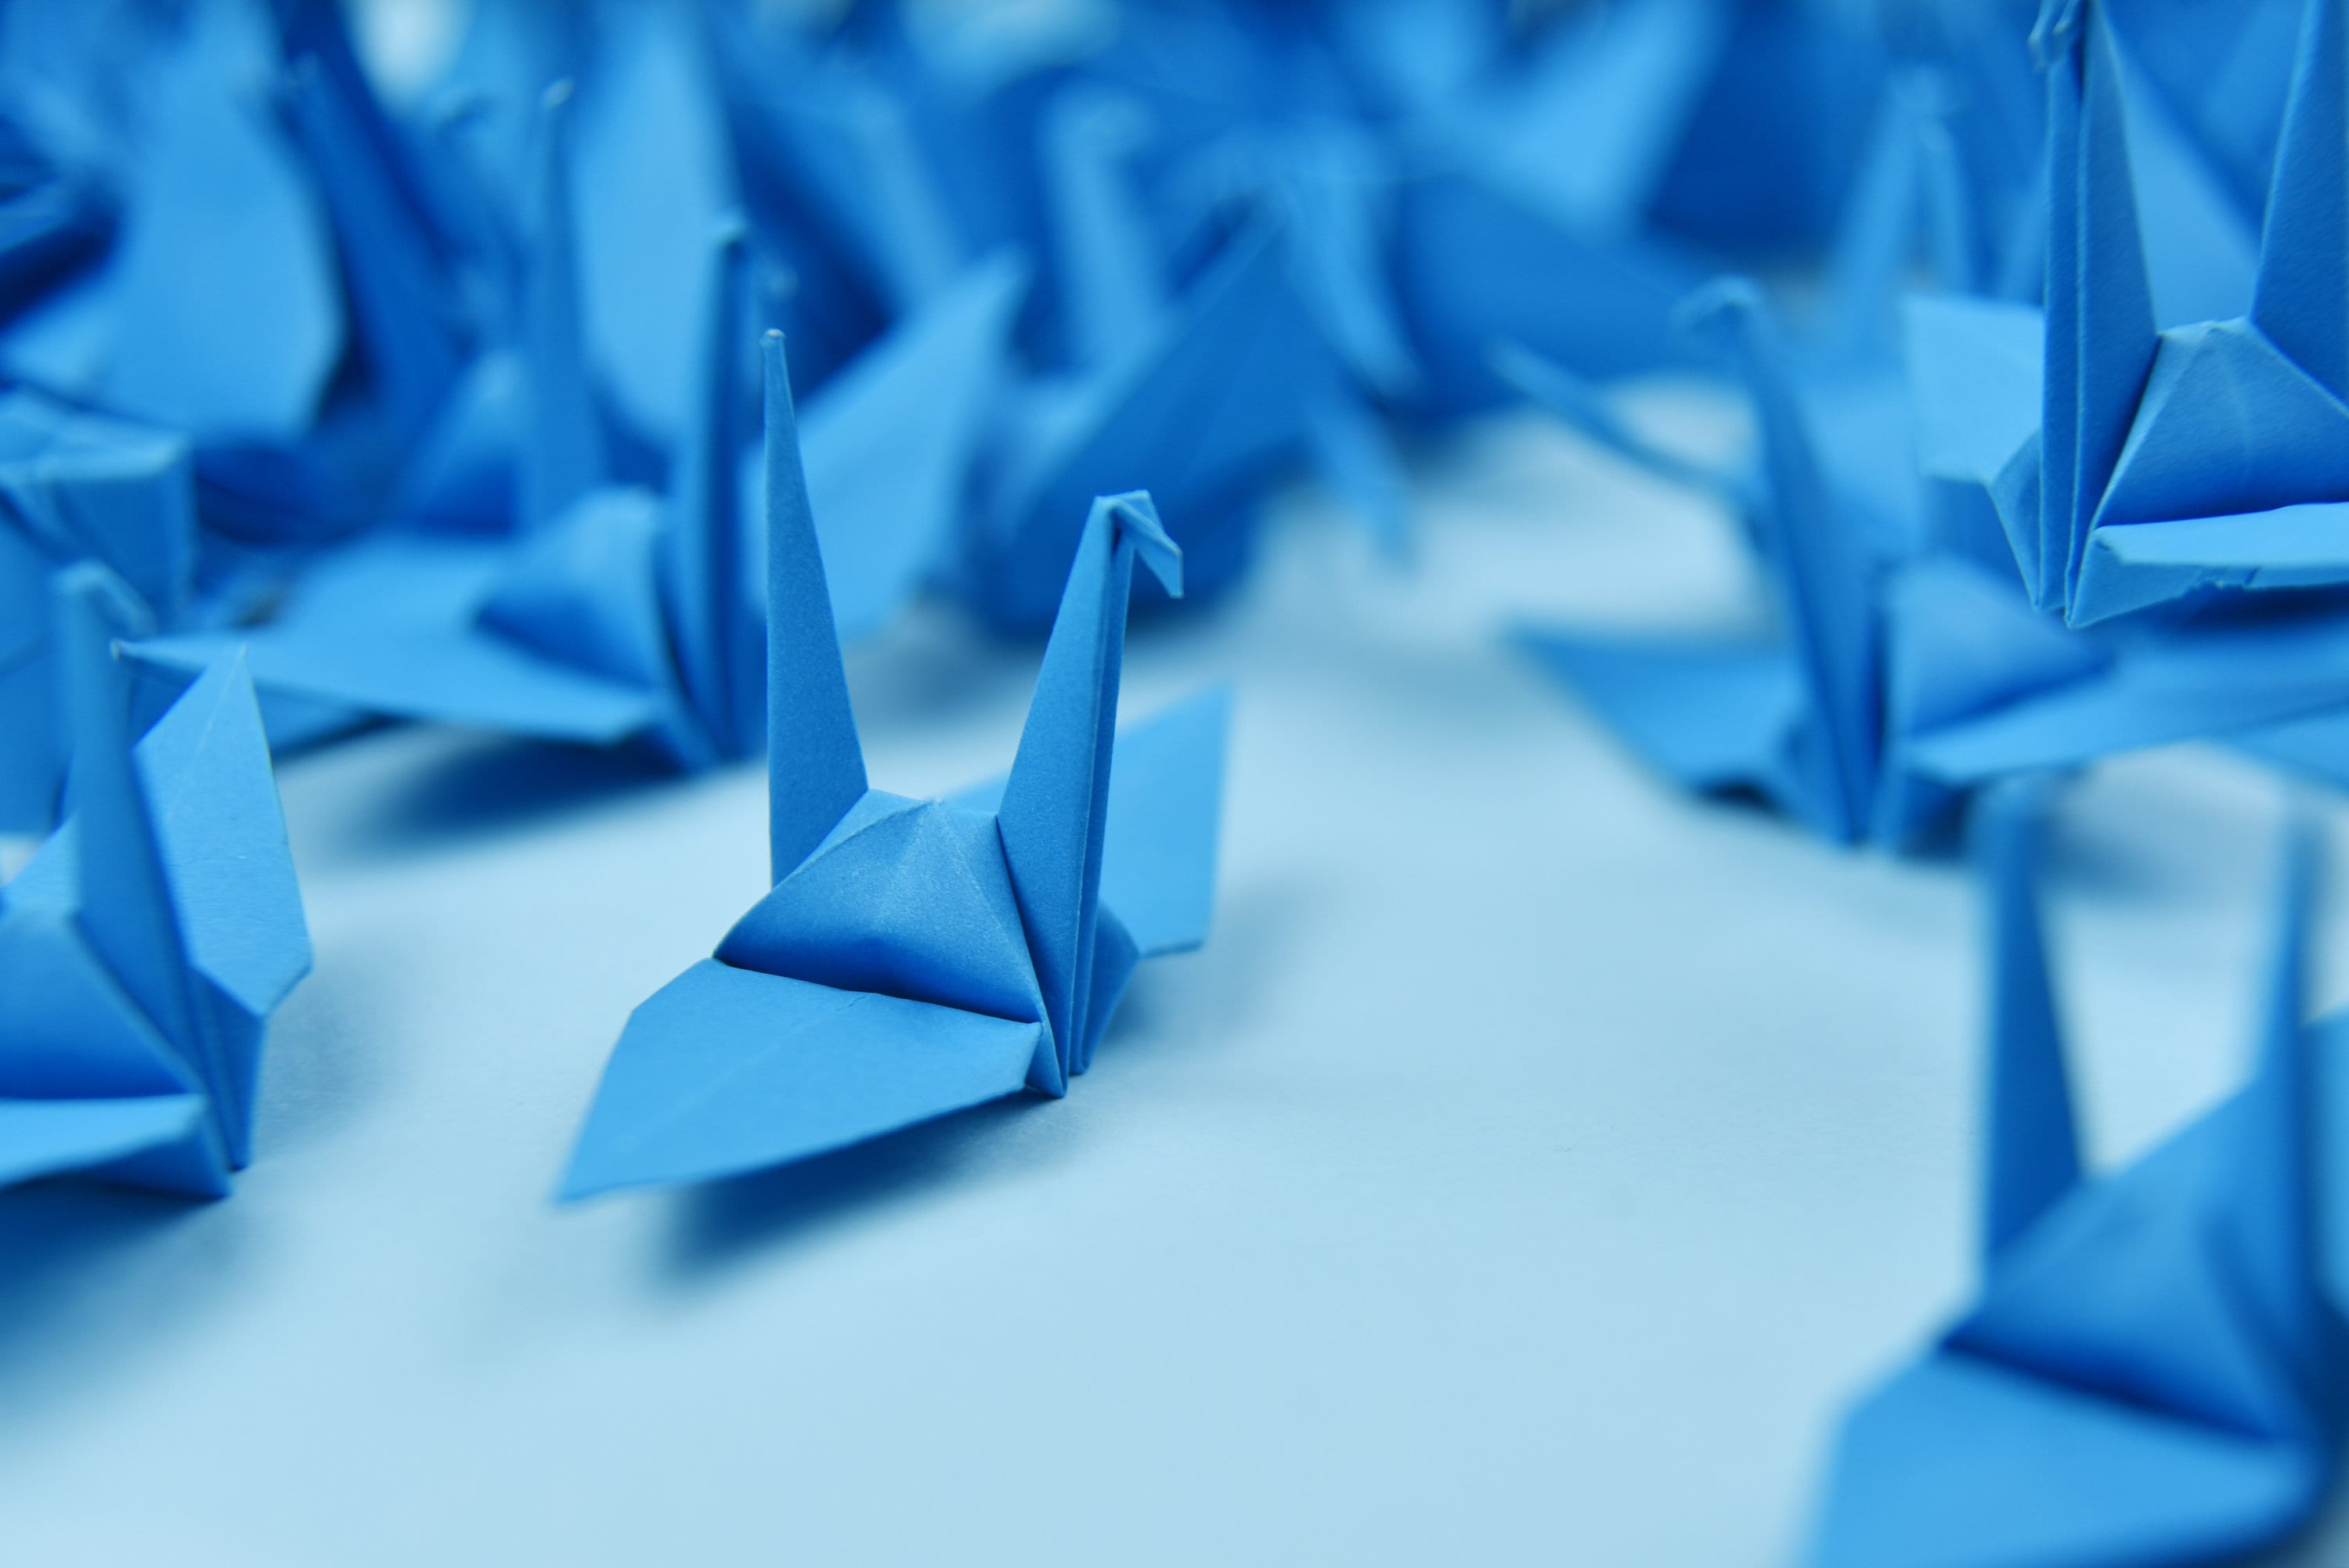 1000 gru di carta origami - blu scuro - 7,5 cm (3 pollici) - per decorazioni, ornamenti, regali di nozze, Natale